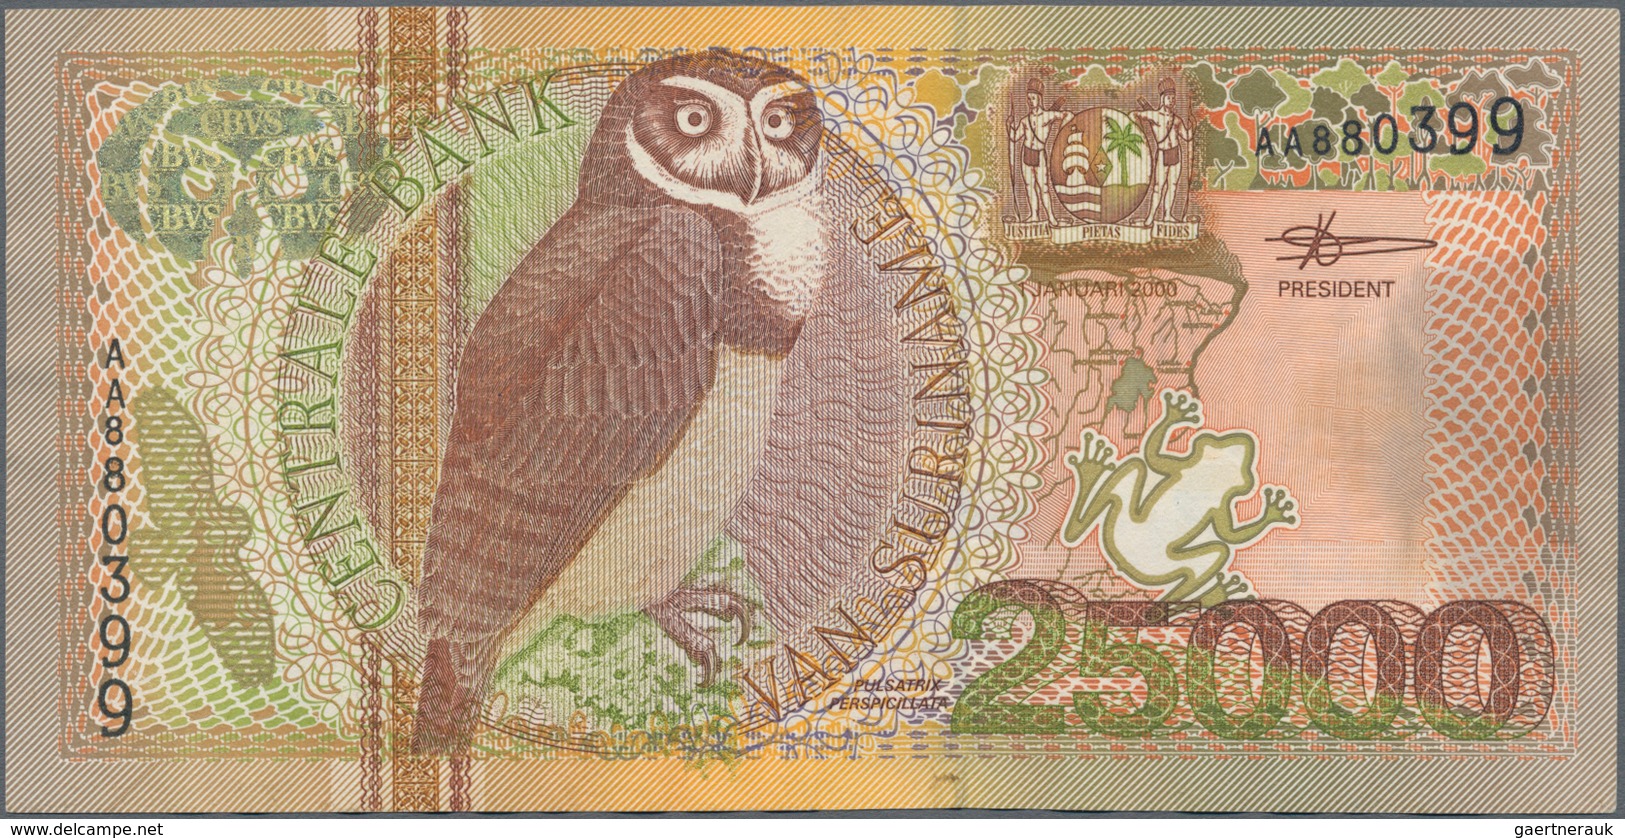 Suriname: Central Bank Van Suriname 25.000 Gulden 2000, P.154, Very Popular Banknote In Great Condit - Surinam